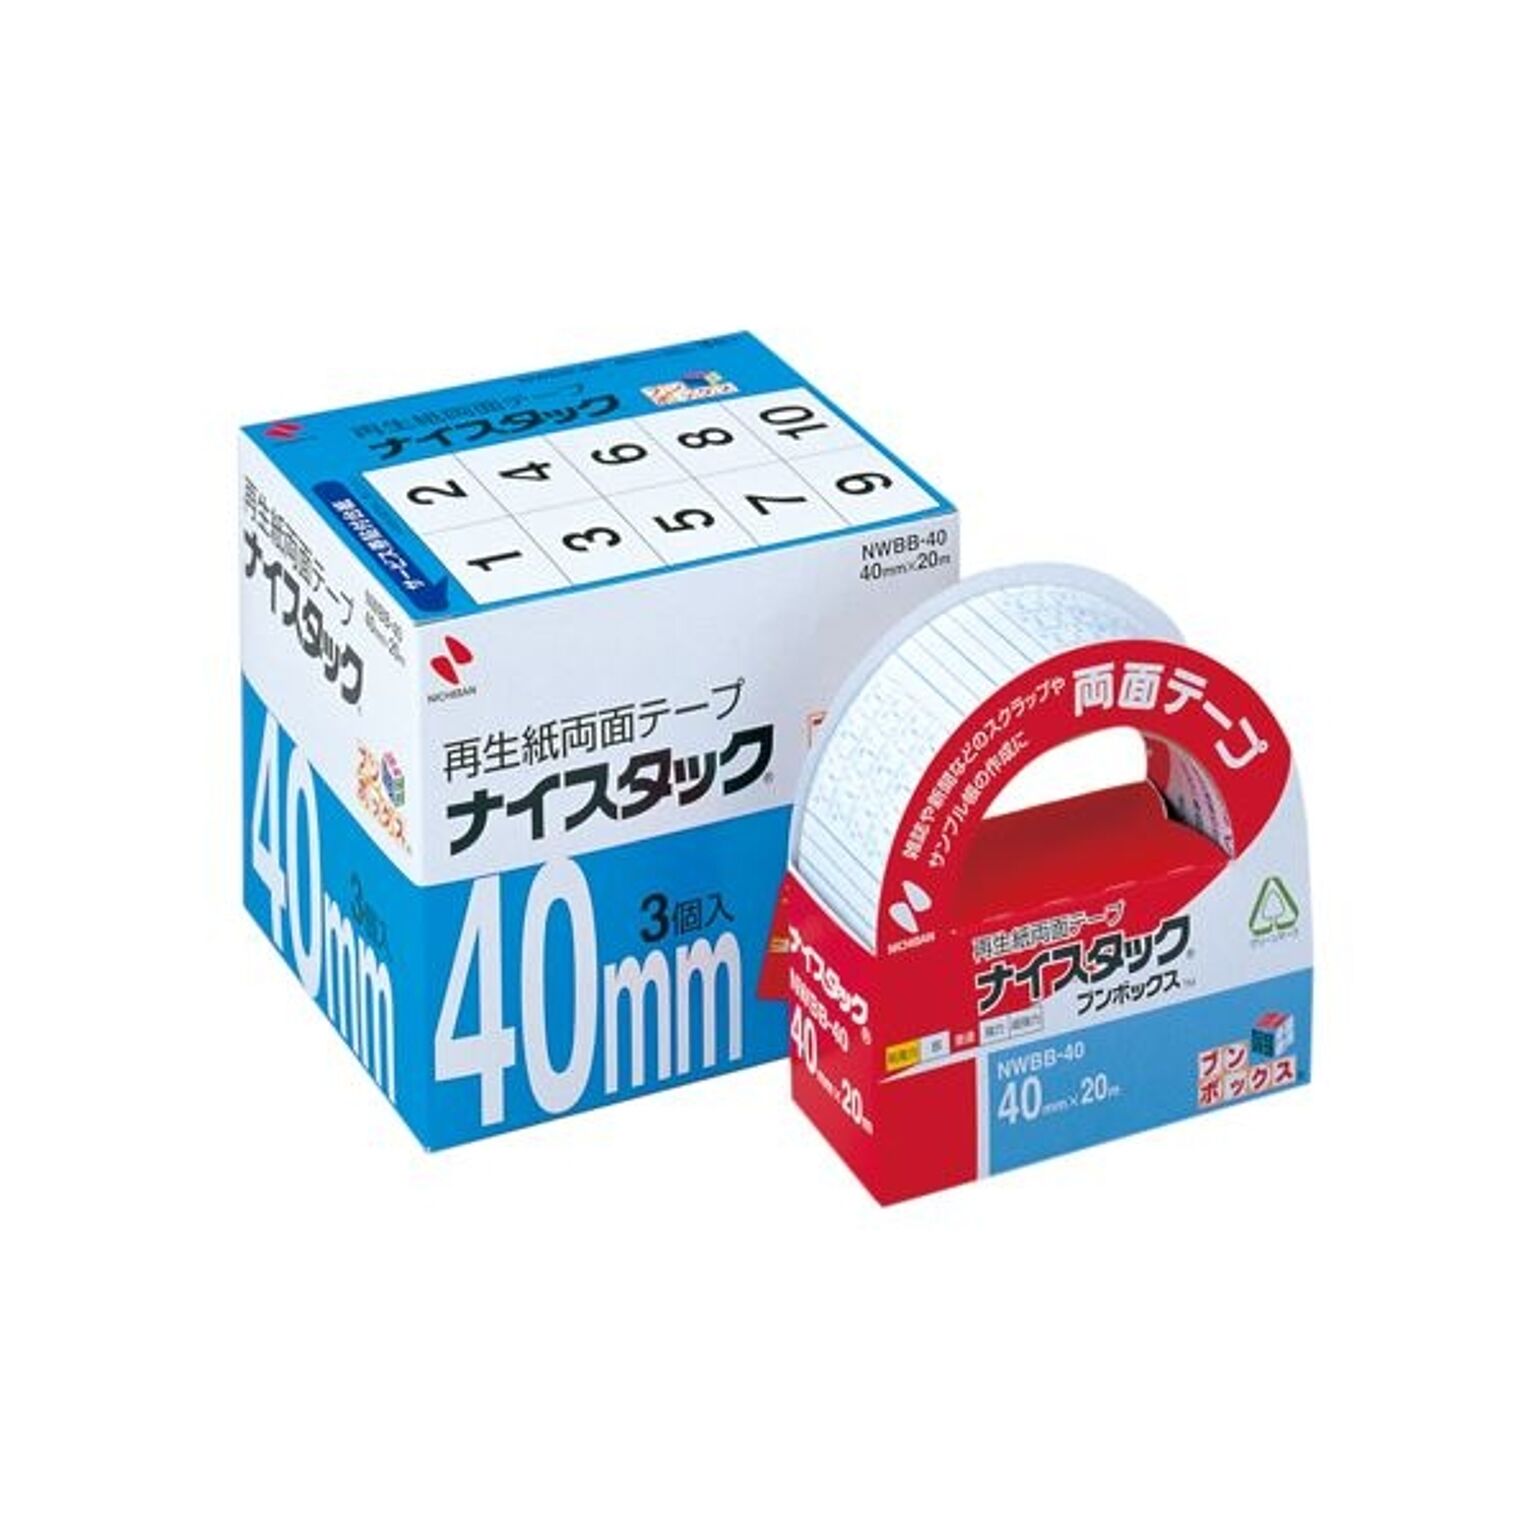 (まとめ) ニチバン ナイスタック 再生紙両面テープ ブンボックス 大巻 40mm×20m NWBB-40 1パック(3巻) 【×2セット】